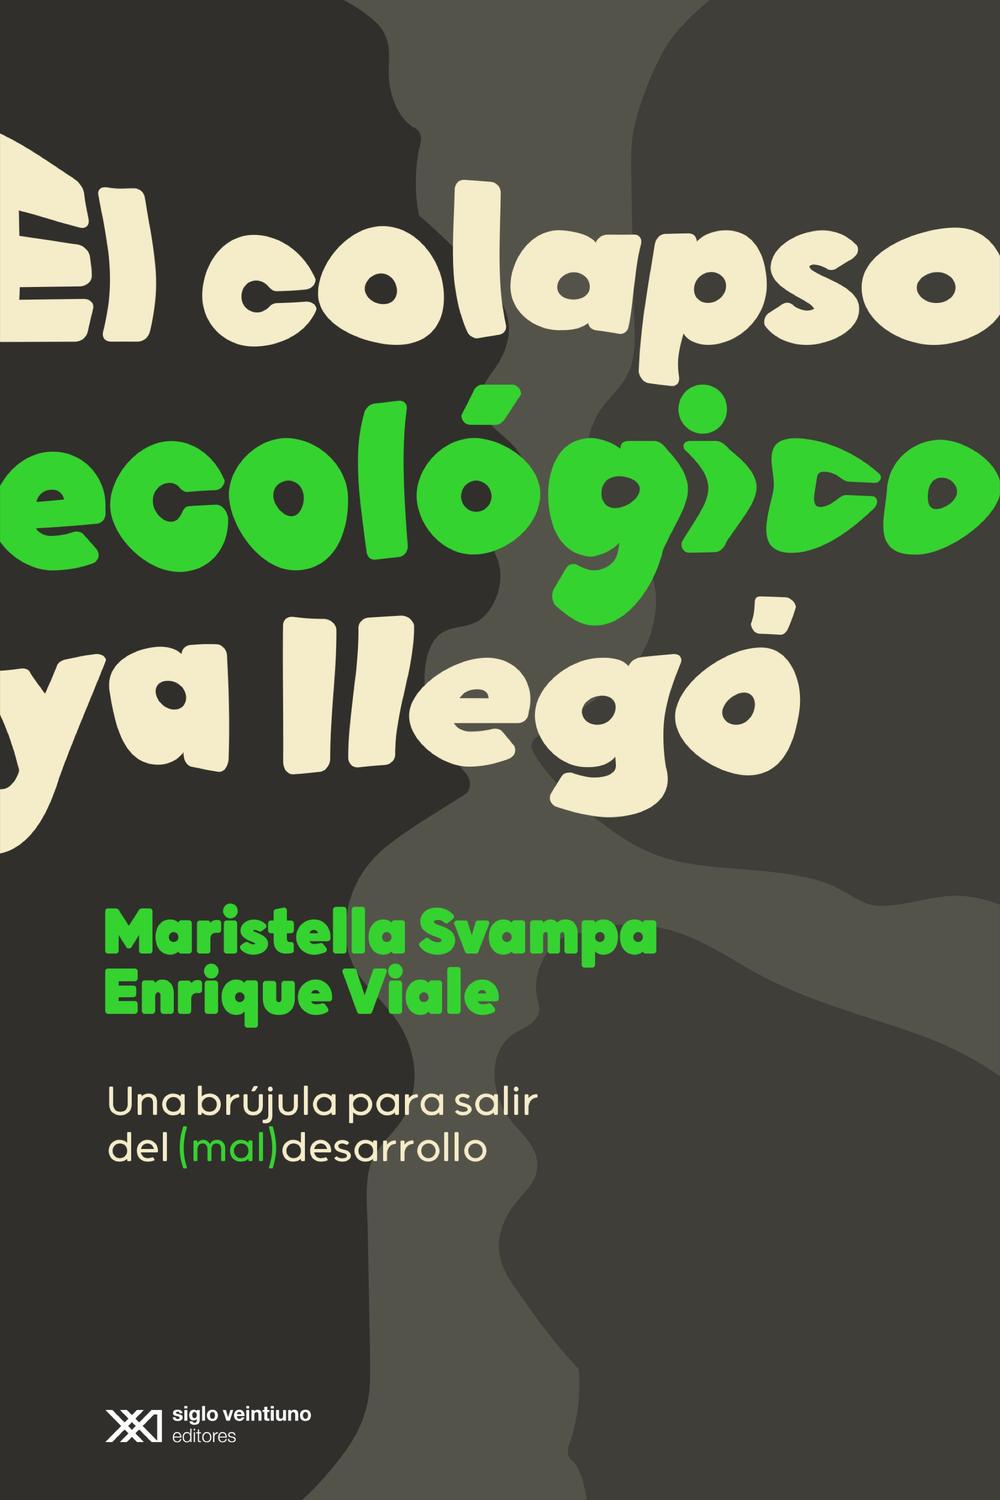 El colapso ecológico ya llegó - Maristella Svampa, Enrique Viale